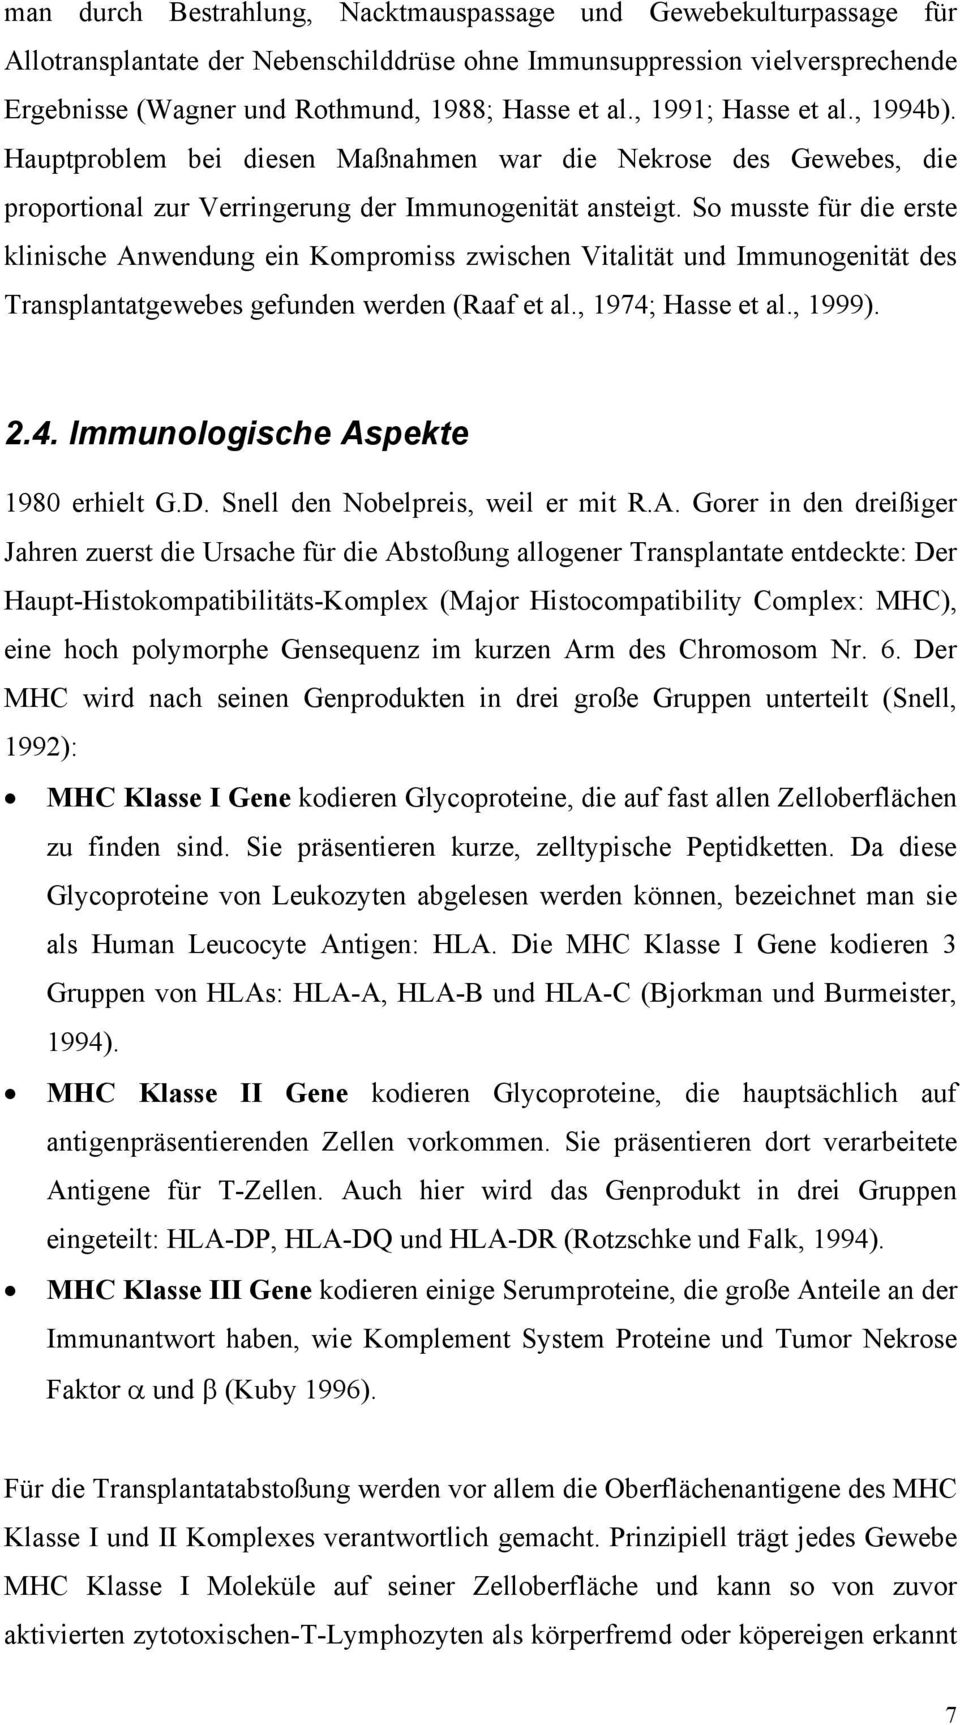 So musste für die erste klinische Anwendung ein Kompromiss zwischen Vitalität und Immunogenität des Transplantatgewebes gefunden werden (Raaf et al., 1974; Hasse et al., 1999). 2.4. Immunologische Aspekte 1980 erhielt G.